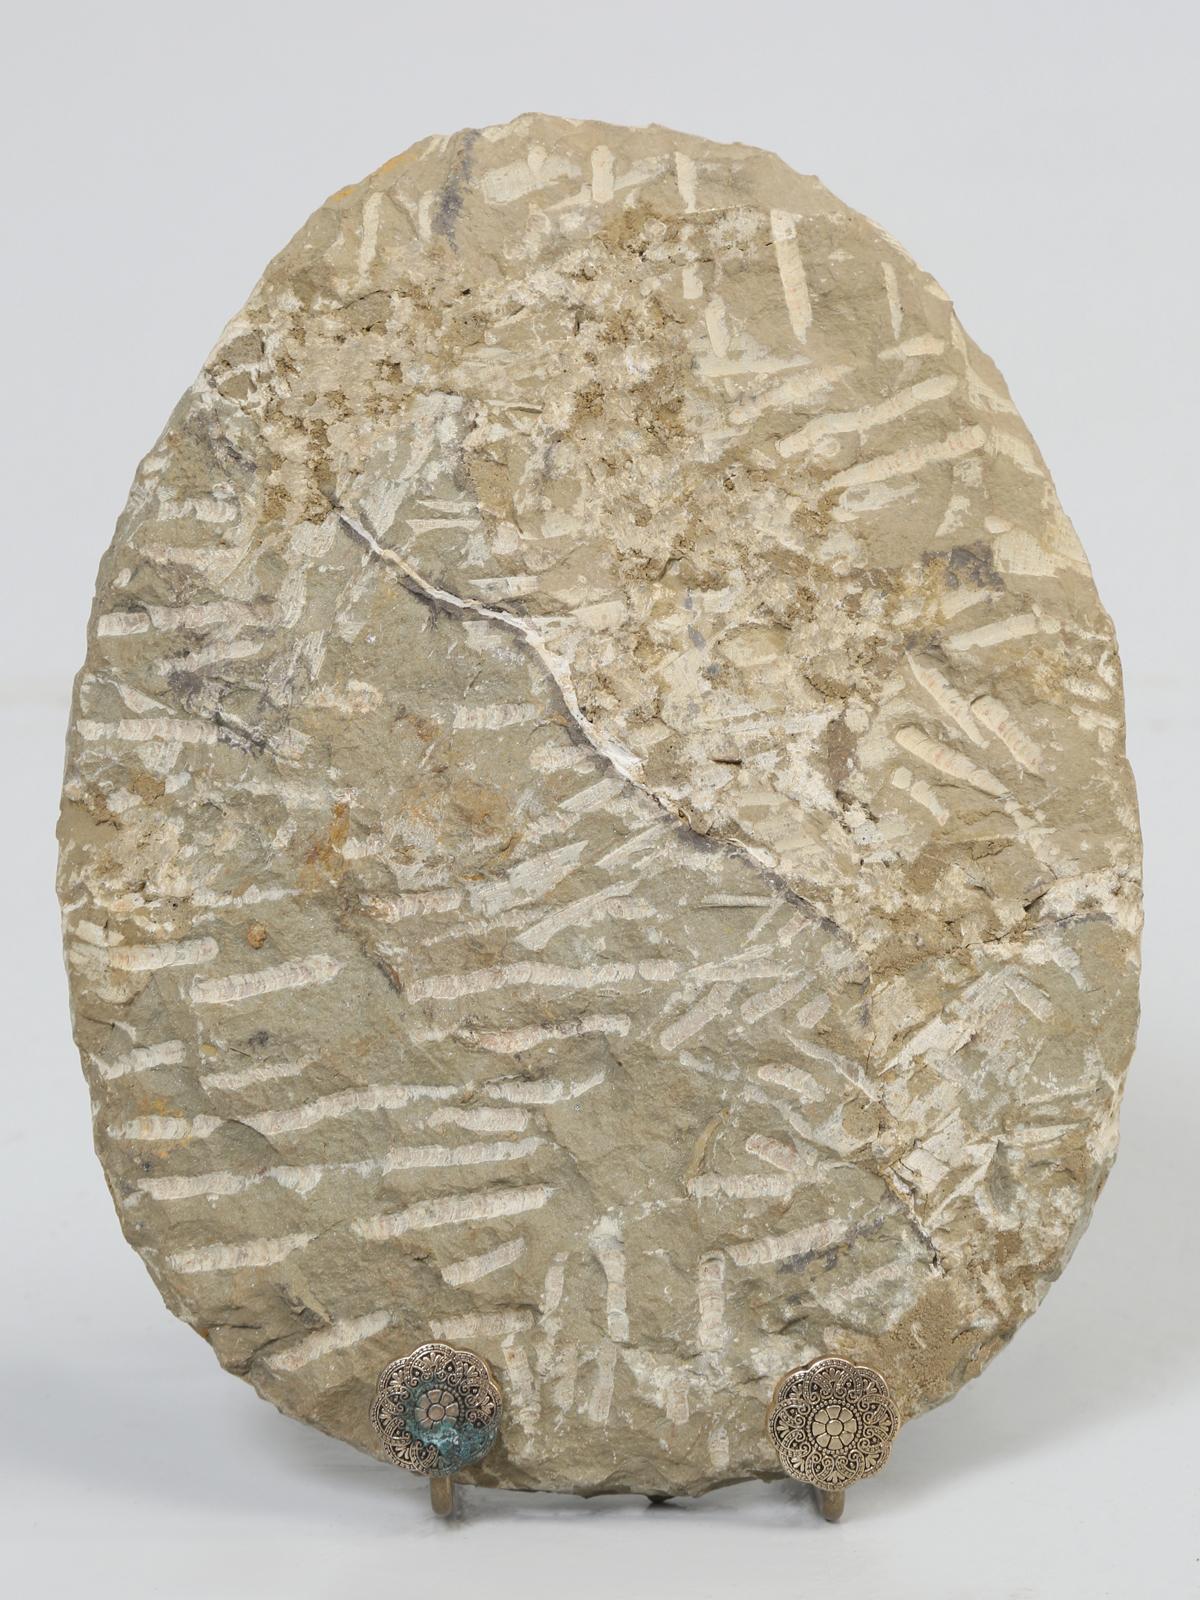 Cambropallas Trilobite Fossil from Morocco 5